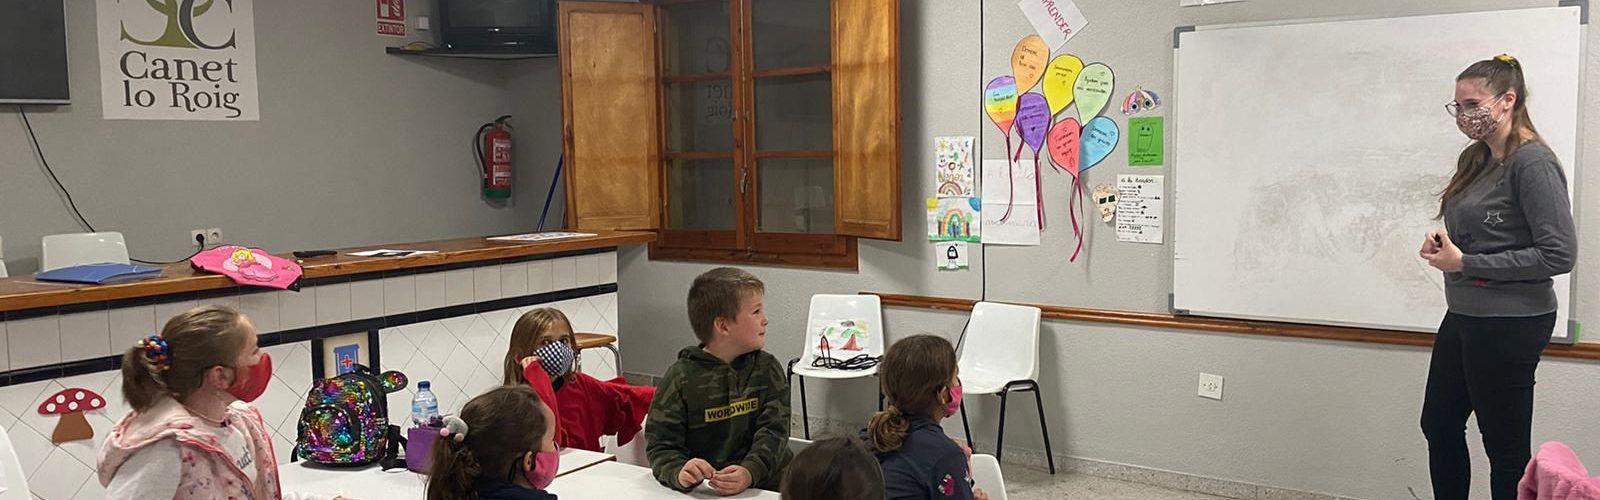 L’Ajuntament de Canet promou les classes d’anglés per a l’alumnat del municipi